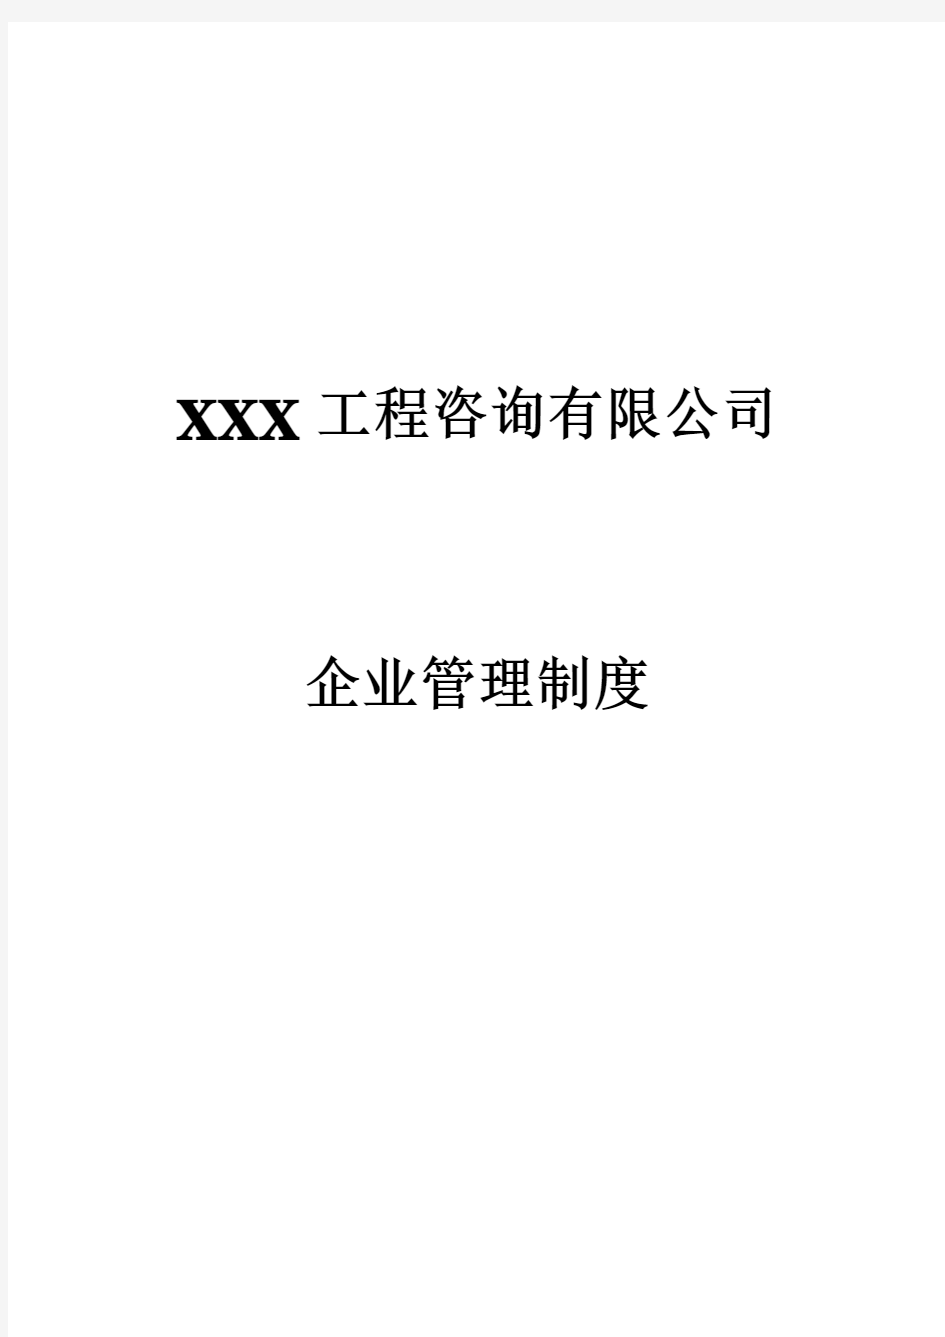 XXX工程咨询有限公司企业管理制度